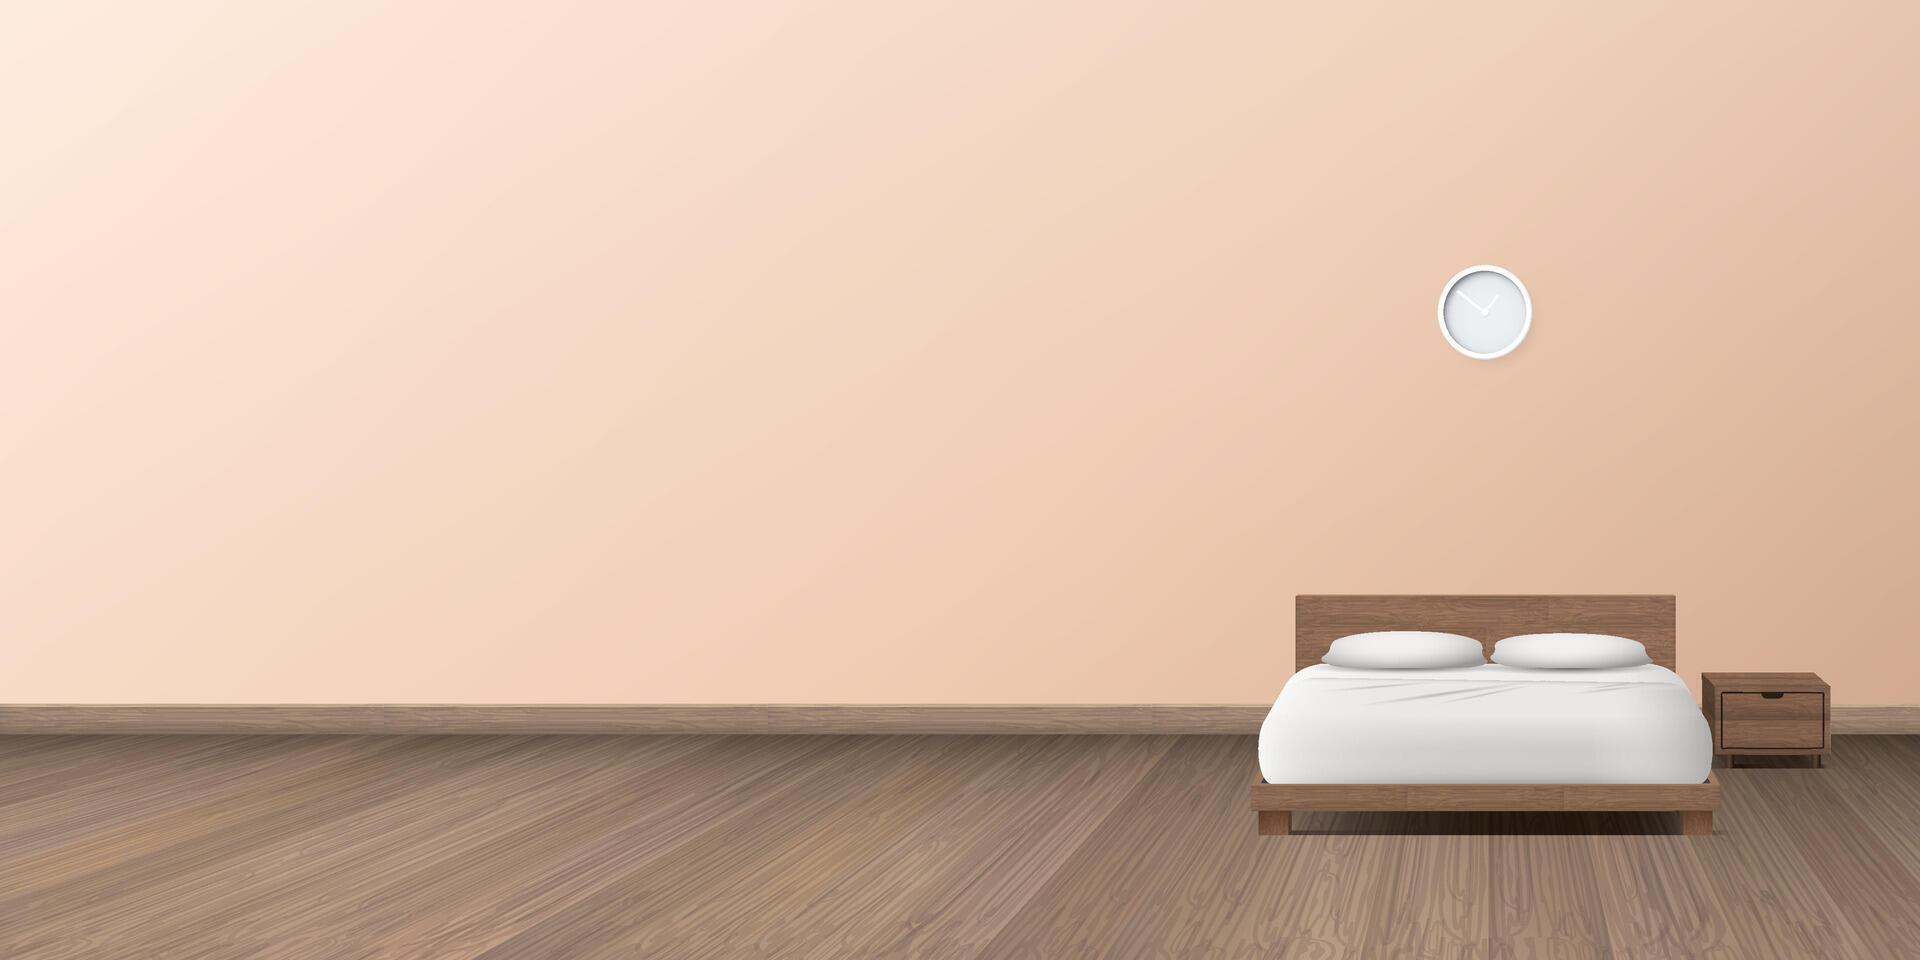 re dimensione letto su di legno pavimento nel il Camera da letto avere pesca tono parete sfondo vettore illustrazione.